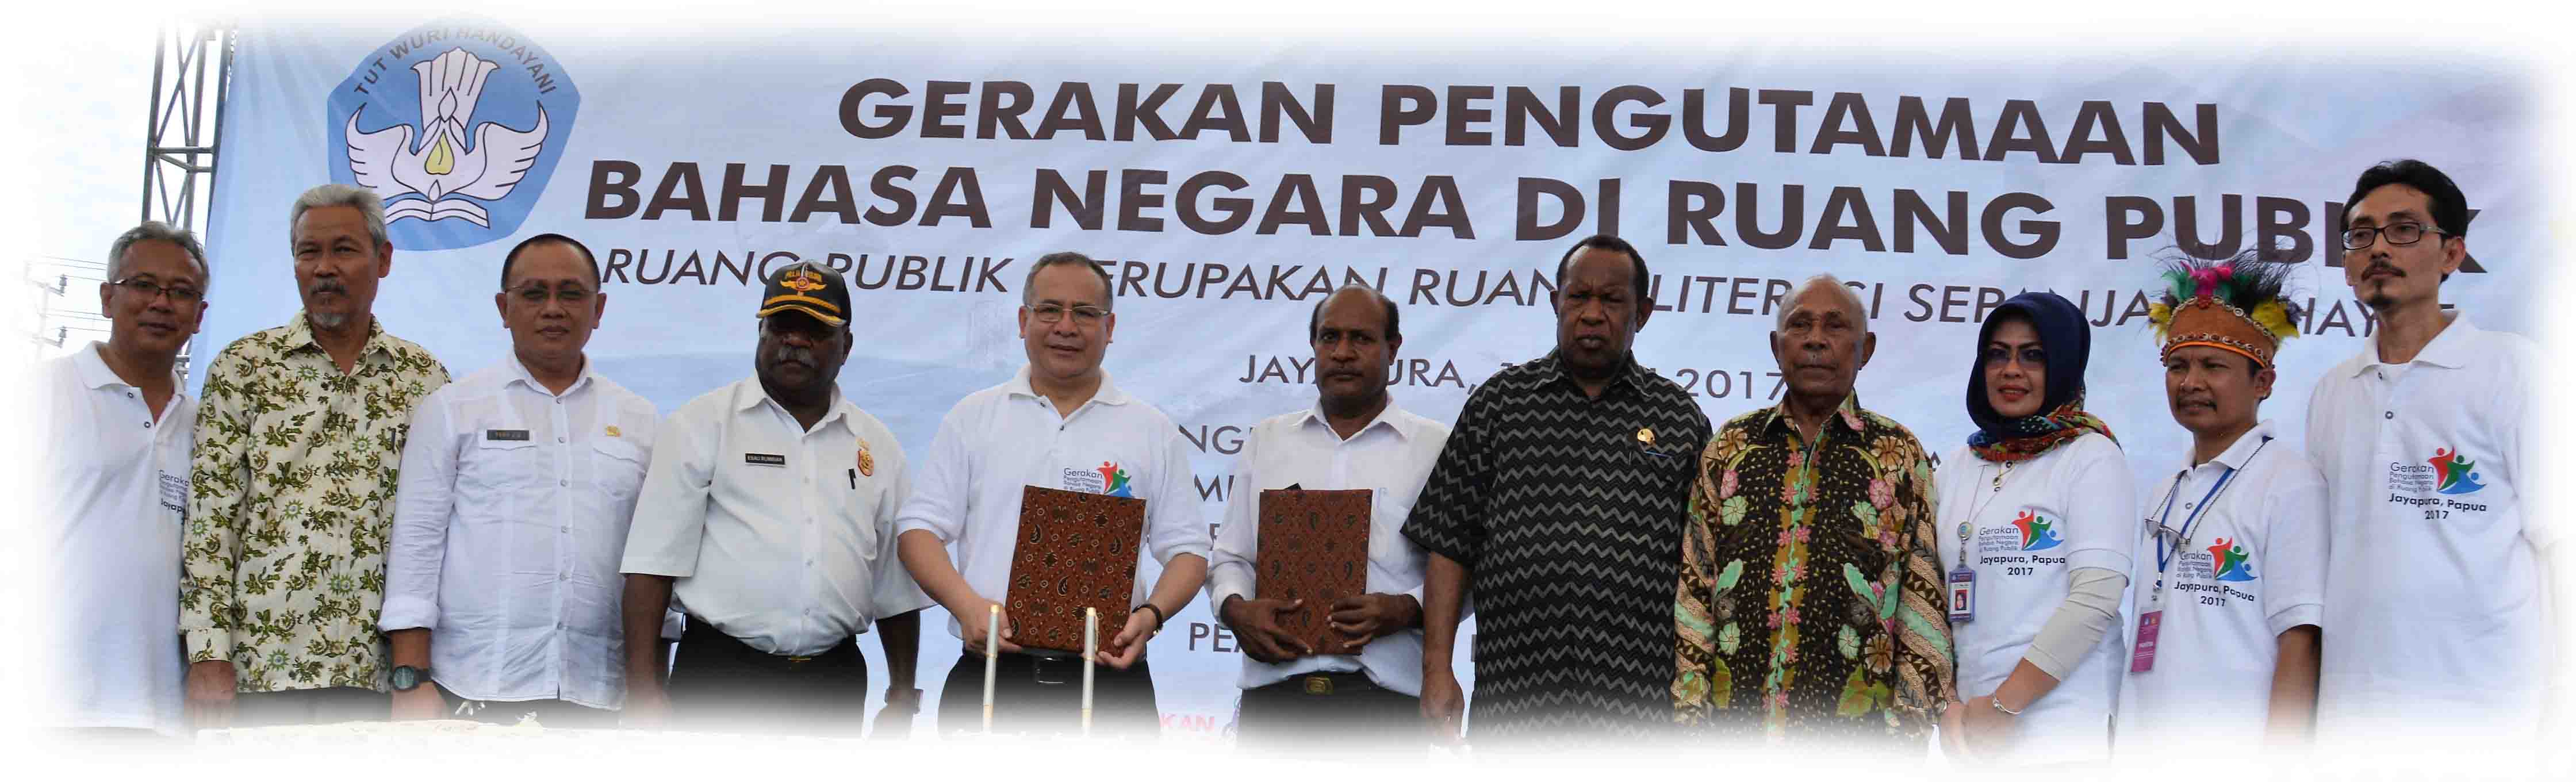 Deklarasi Pengutamaan Bahasa Negara di Ruang Publik Tanah Papua